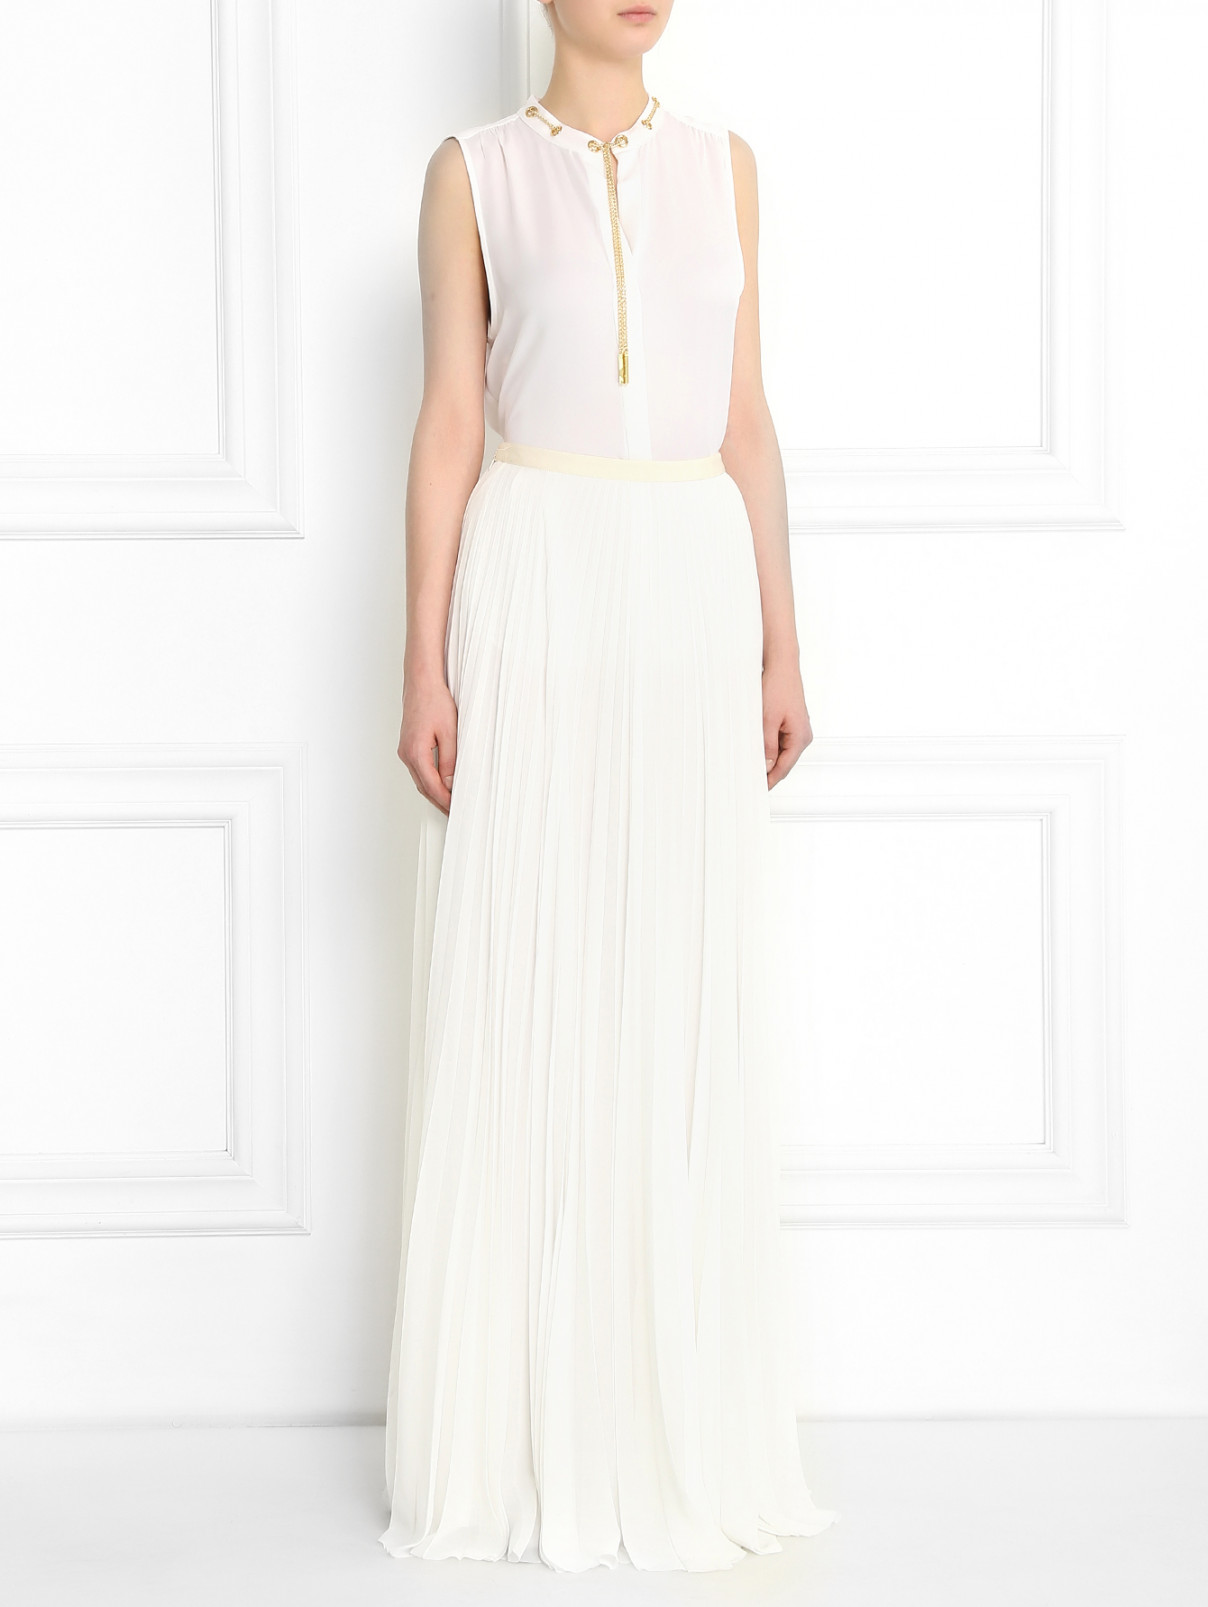 Плиссированная юбка-макси Andrew GN  –  Модель Общий вид  – Цвет:  Белый